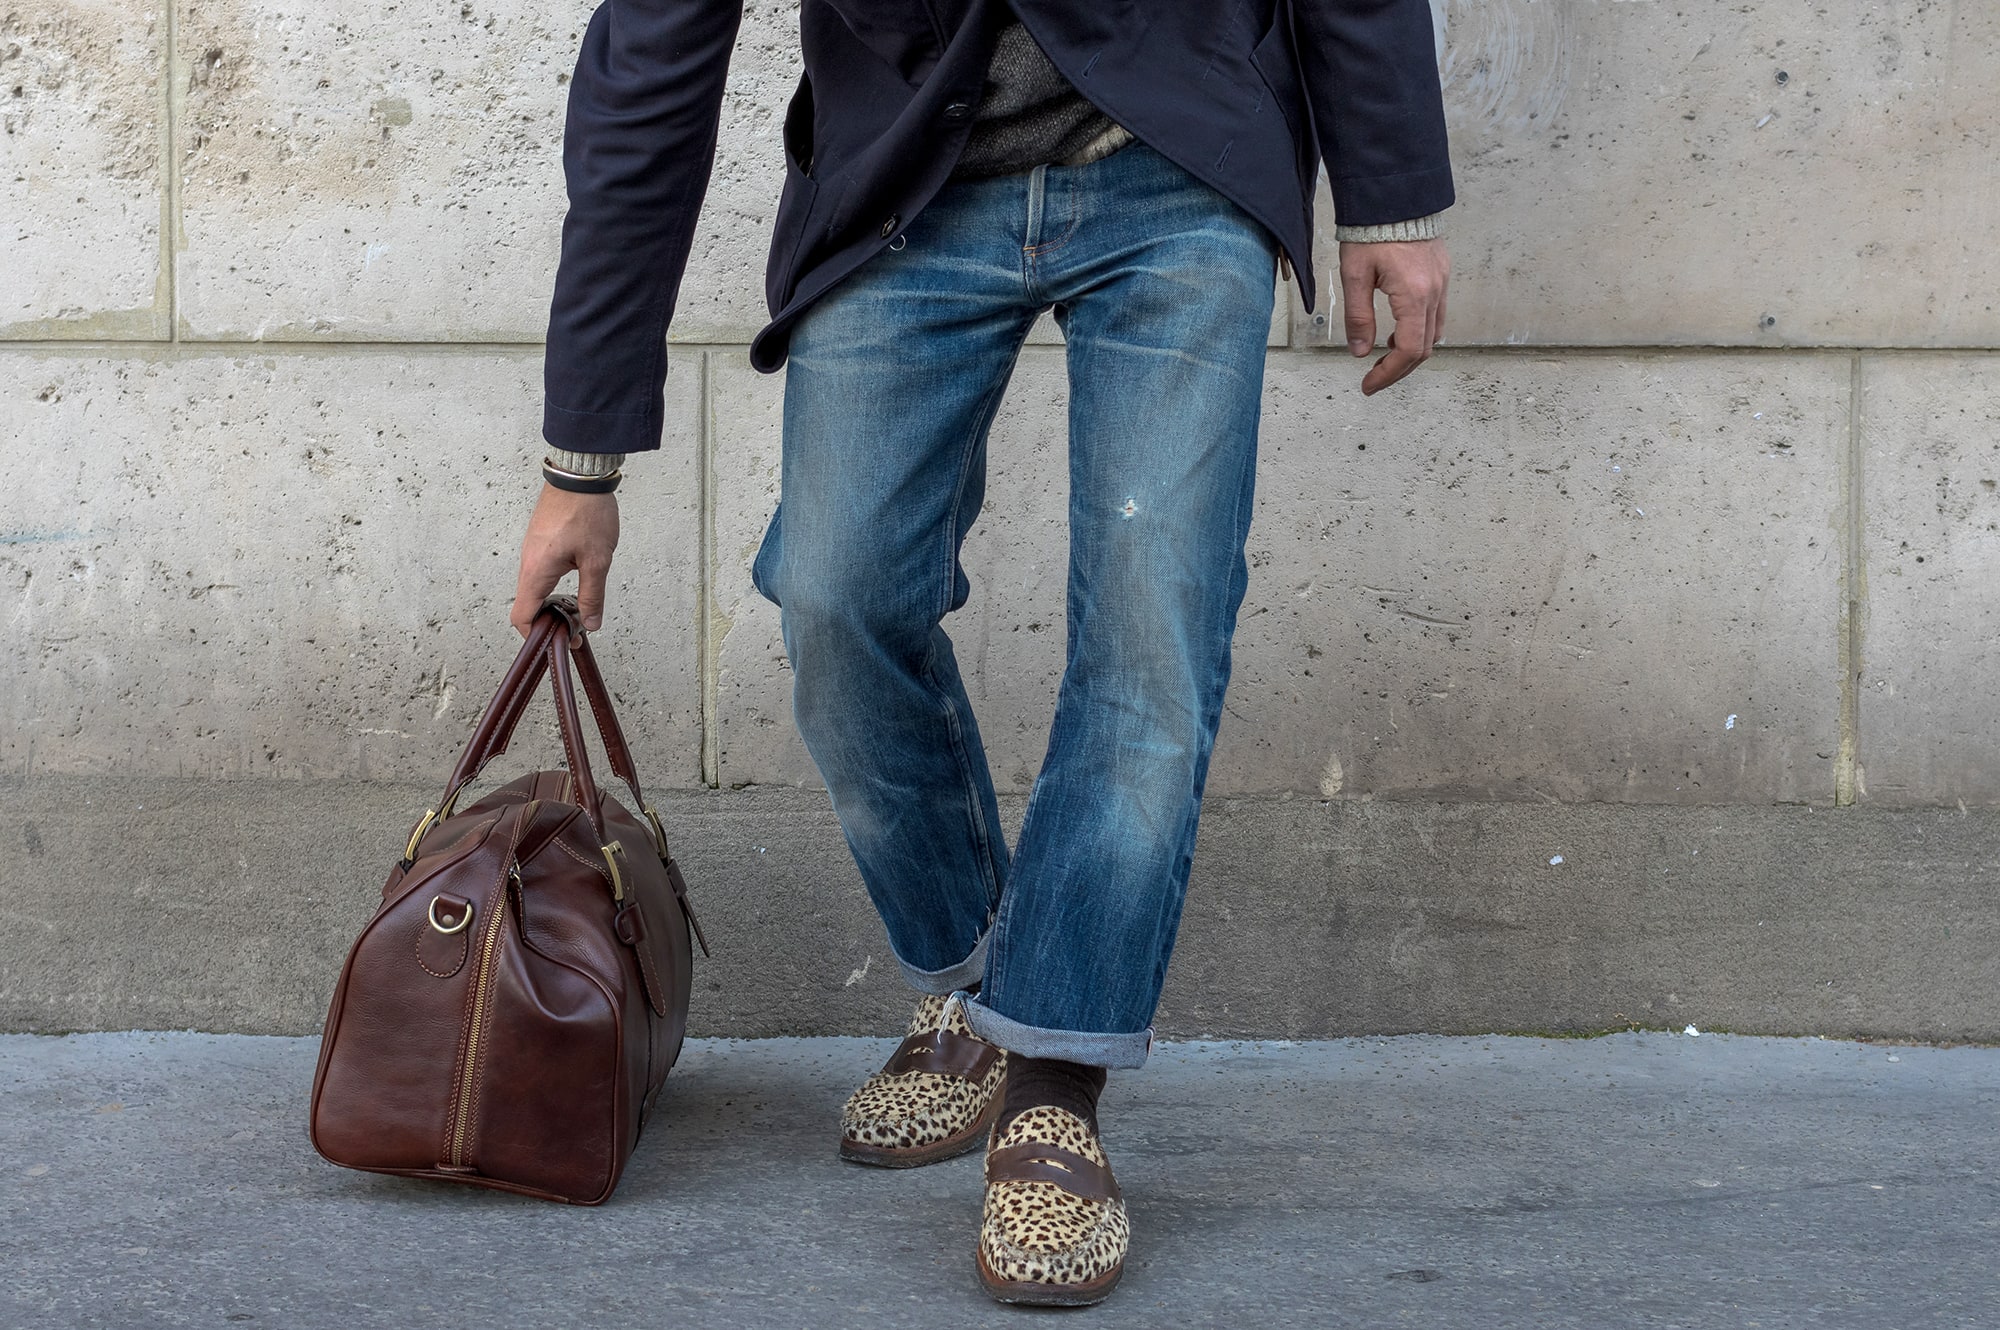 tenue d'inspiration japonaise avec des volumes plus amples : jeans droit et court, dy layering et une touche d'exotisme aevc une paire de loafer Yuketen en imprimé léopard 